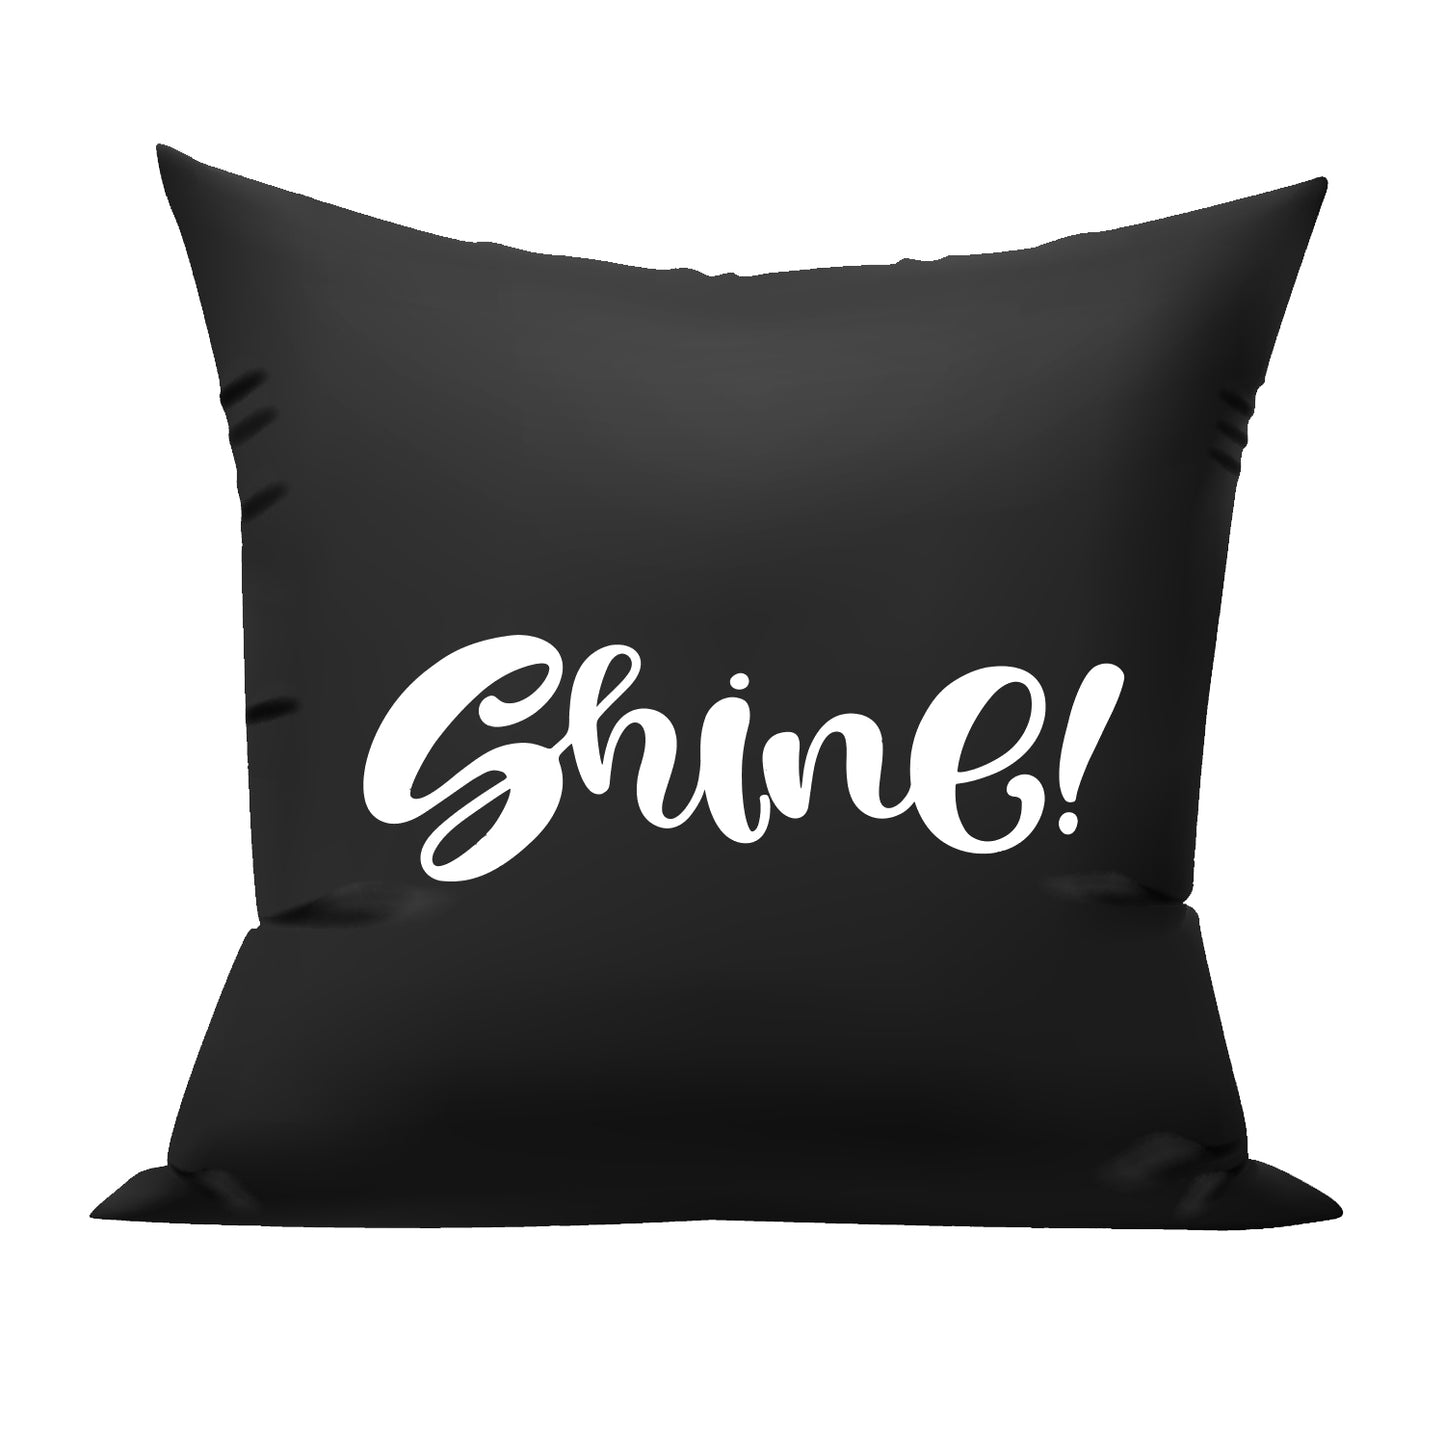 shine cushion